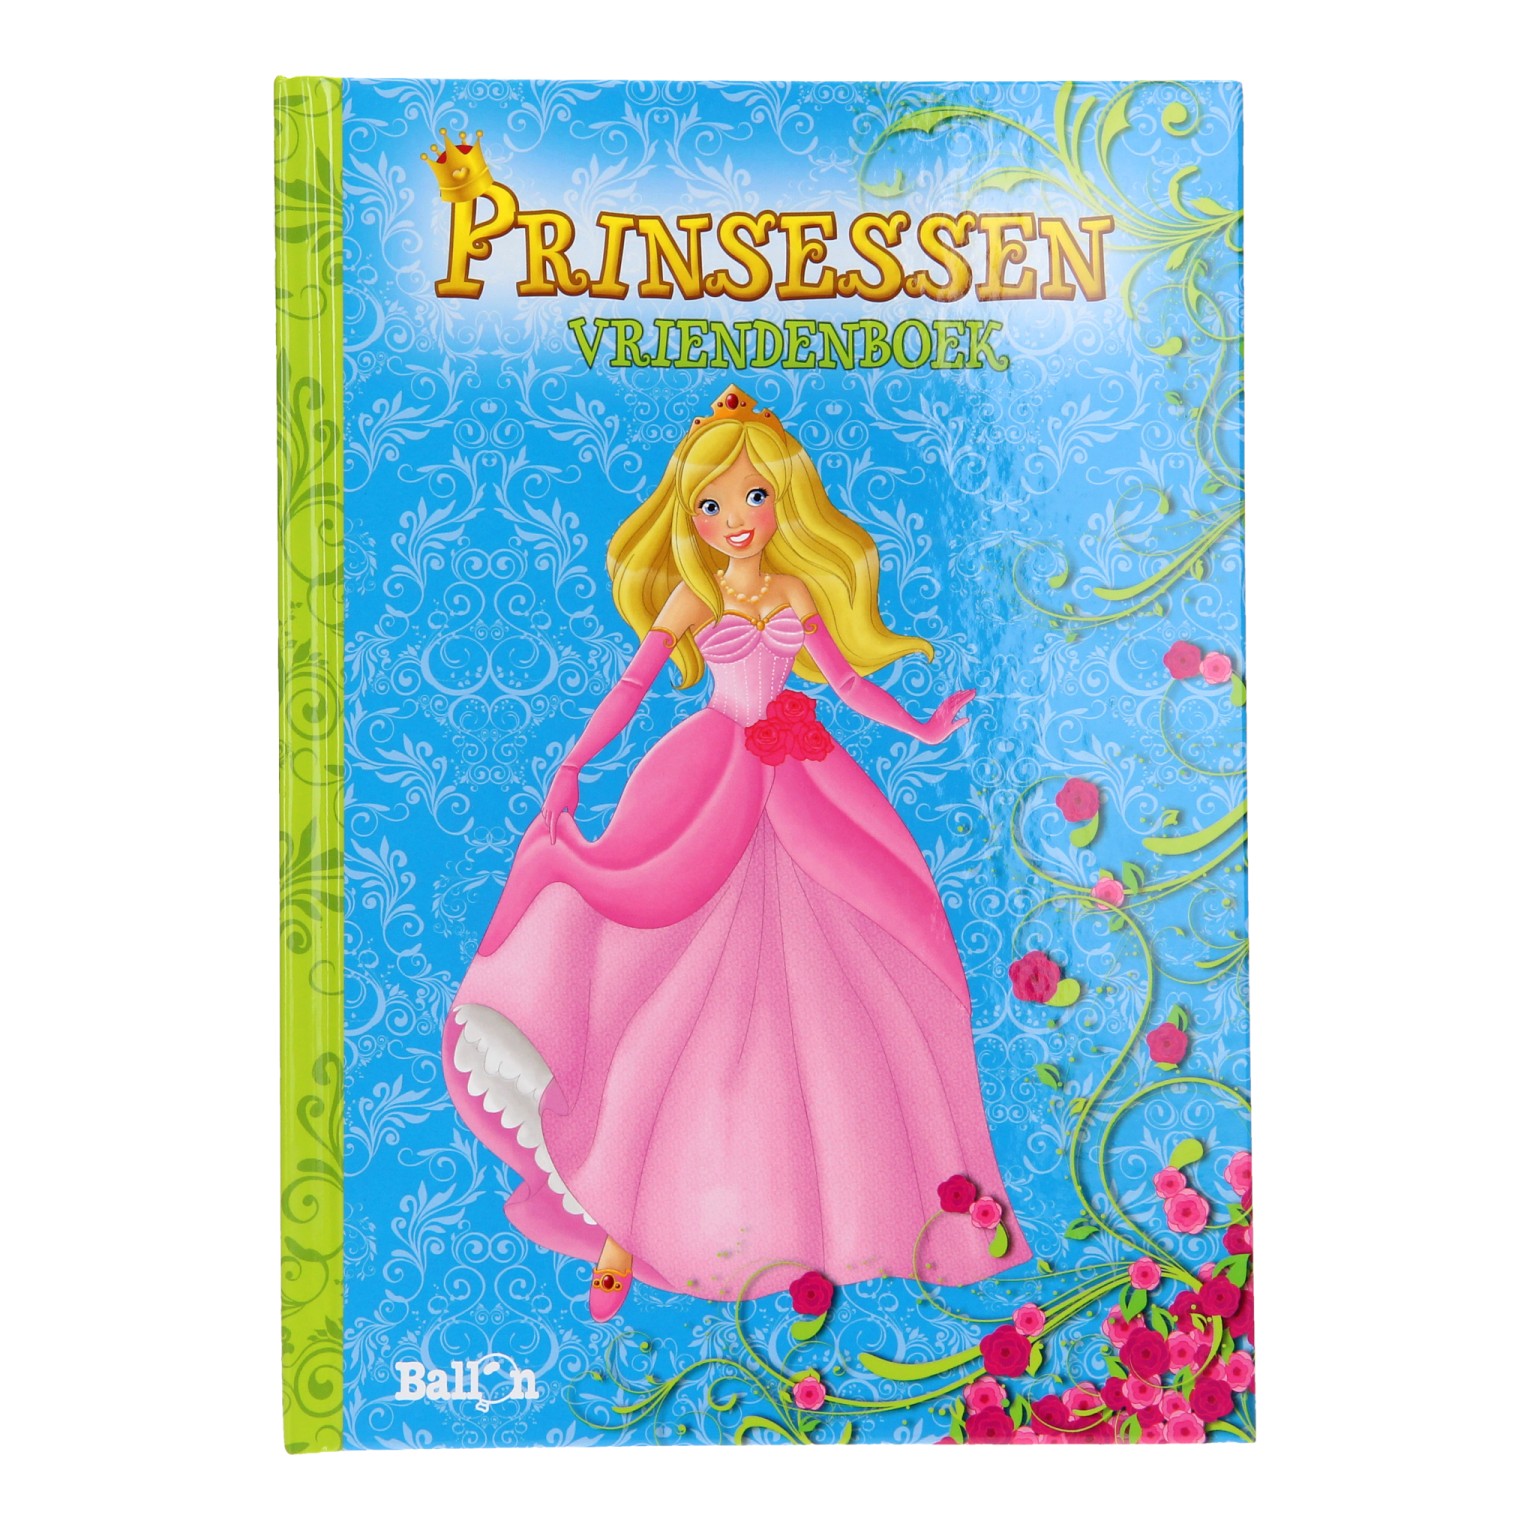 Vriendenboek Prinsessen